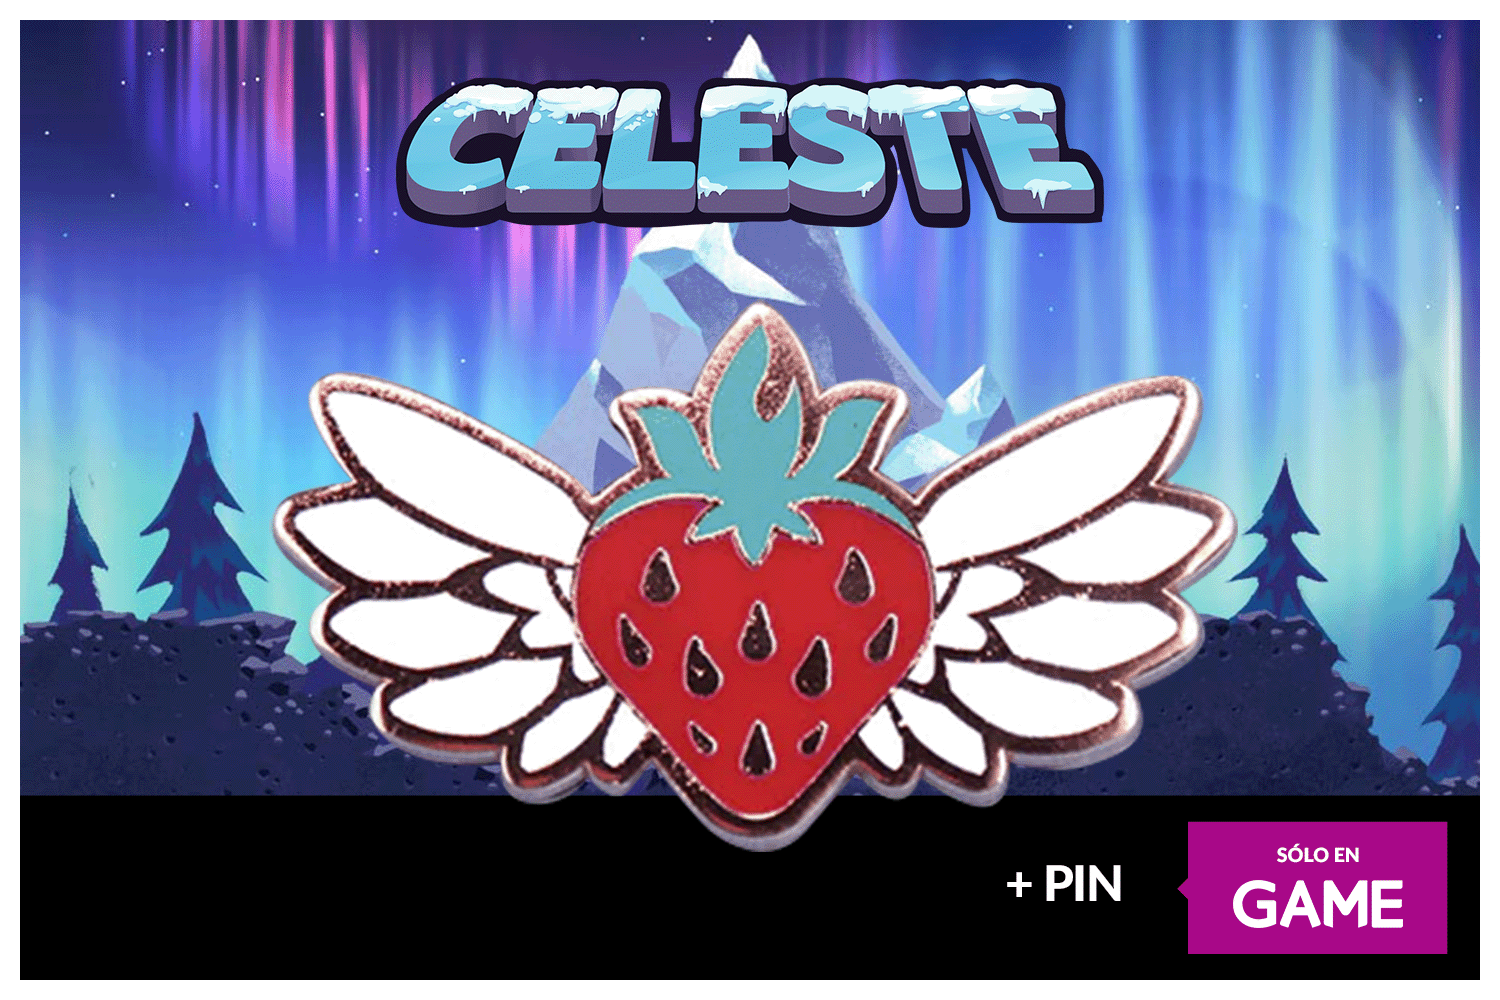 Celeste reserva pin GAME